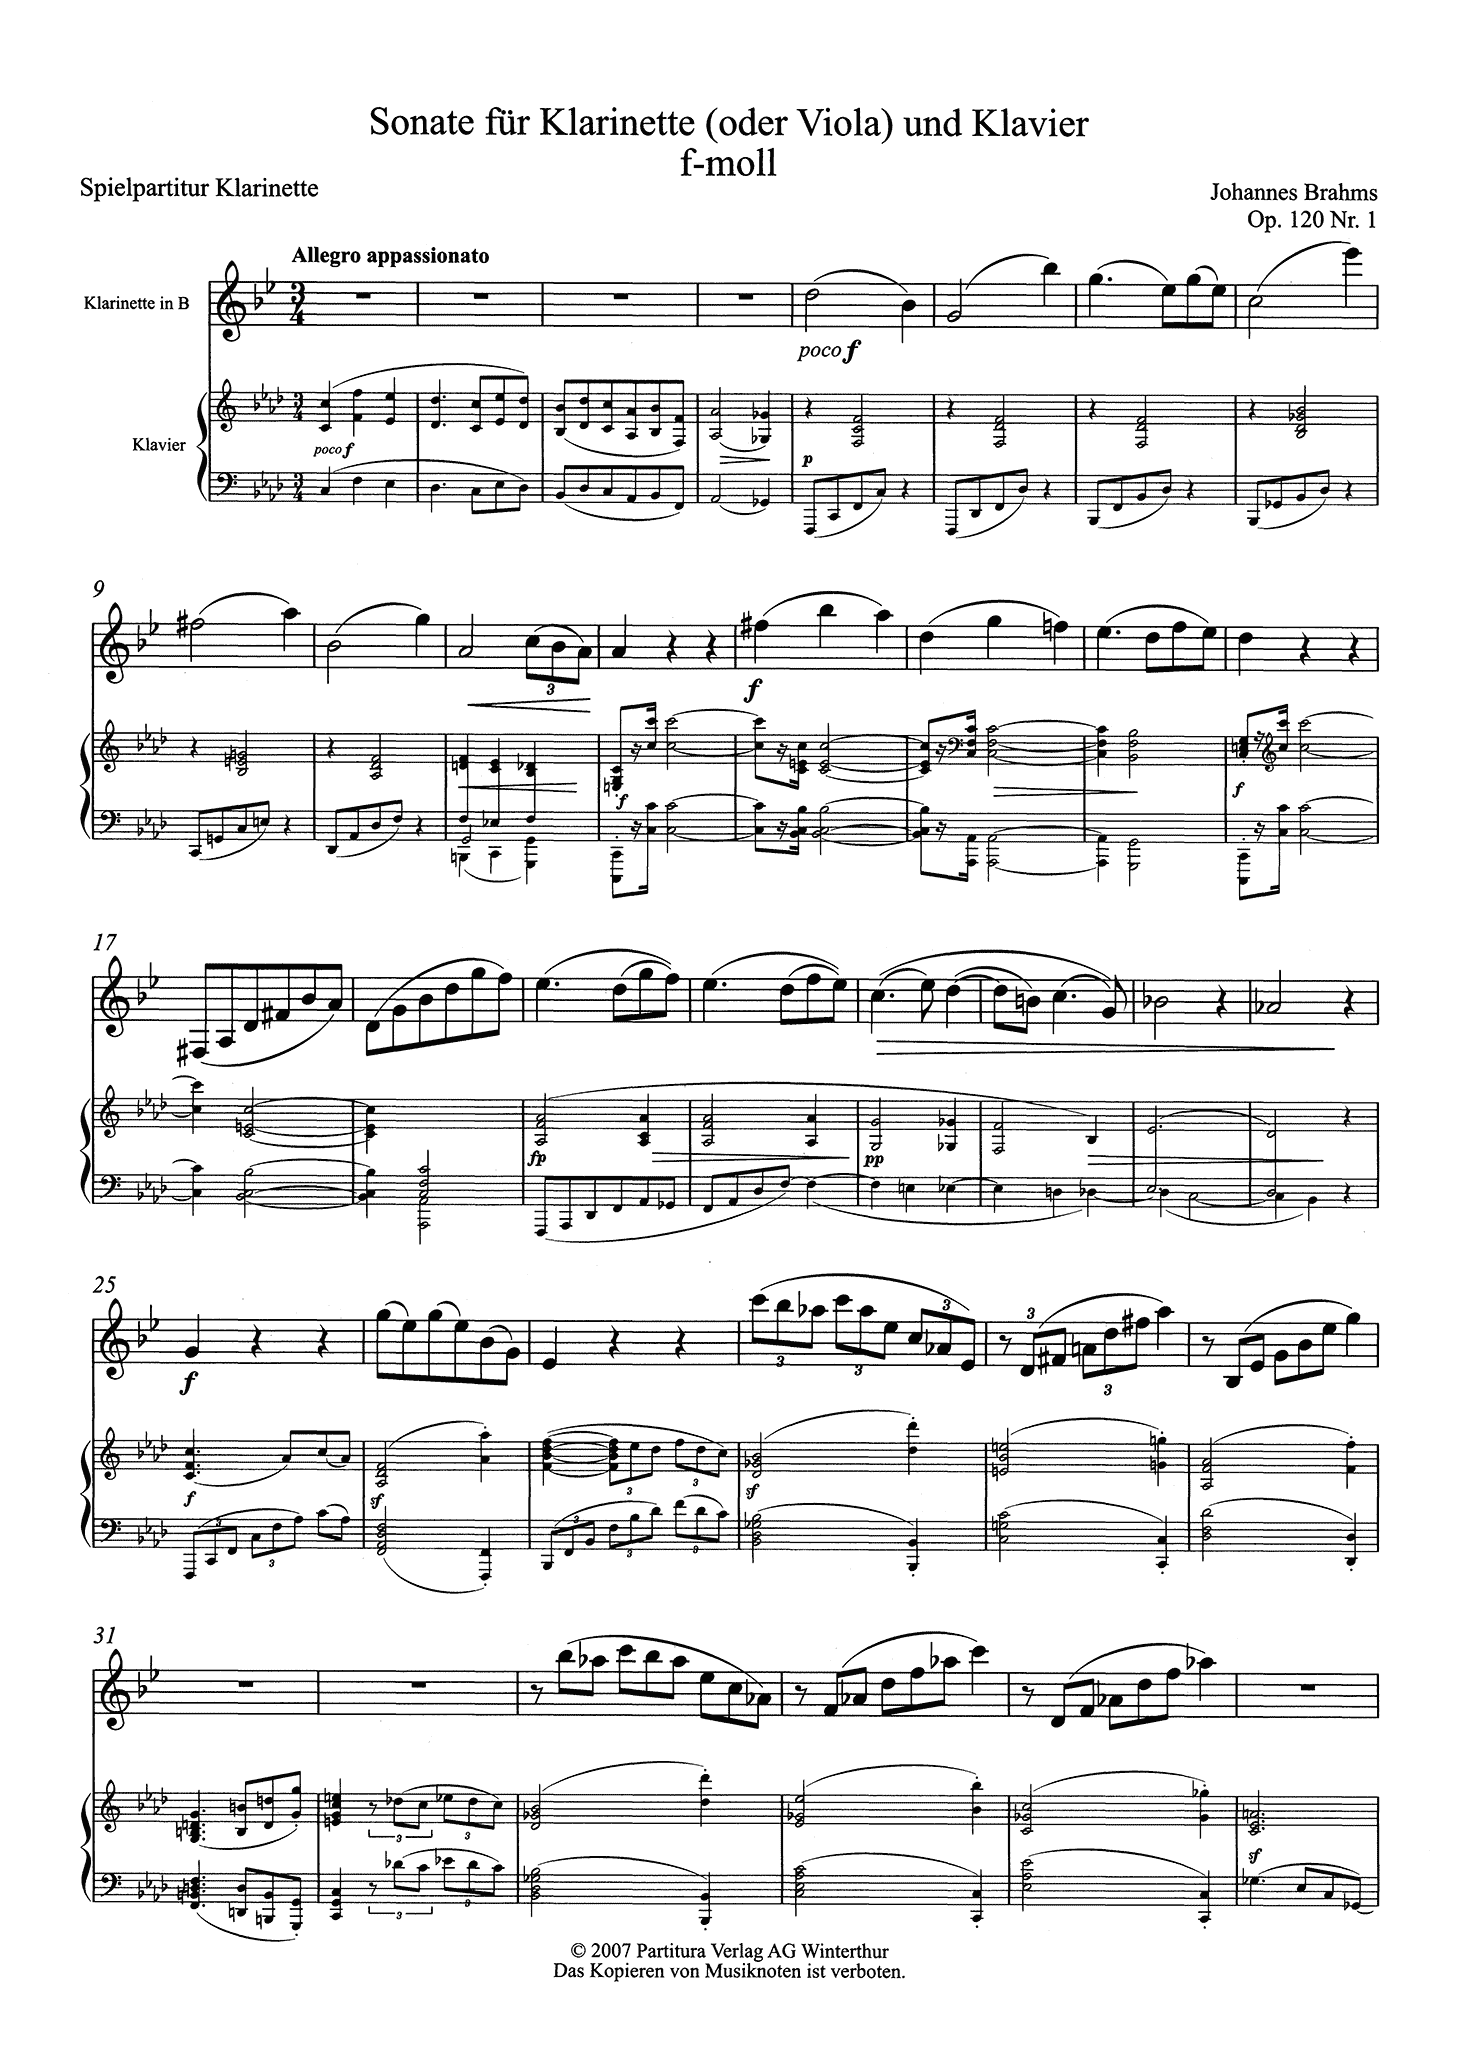 Sonata in F Minor, Op. 120 No. 1 Clarinet score